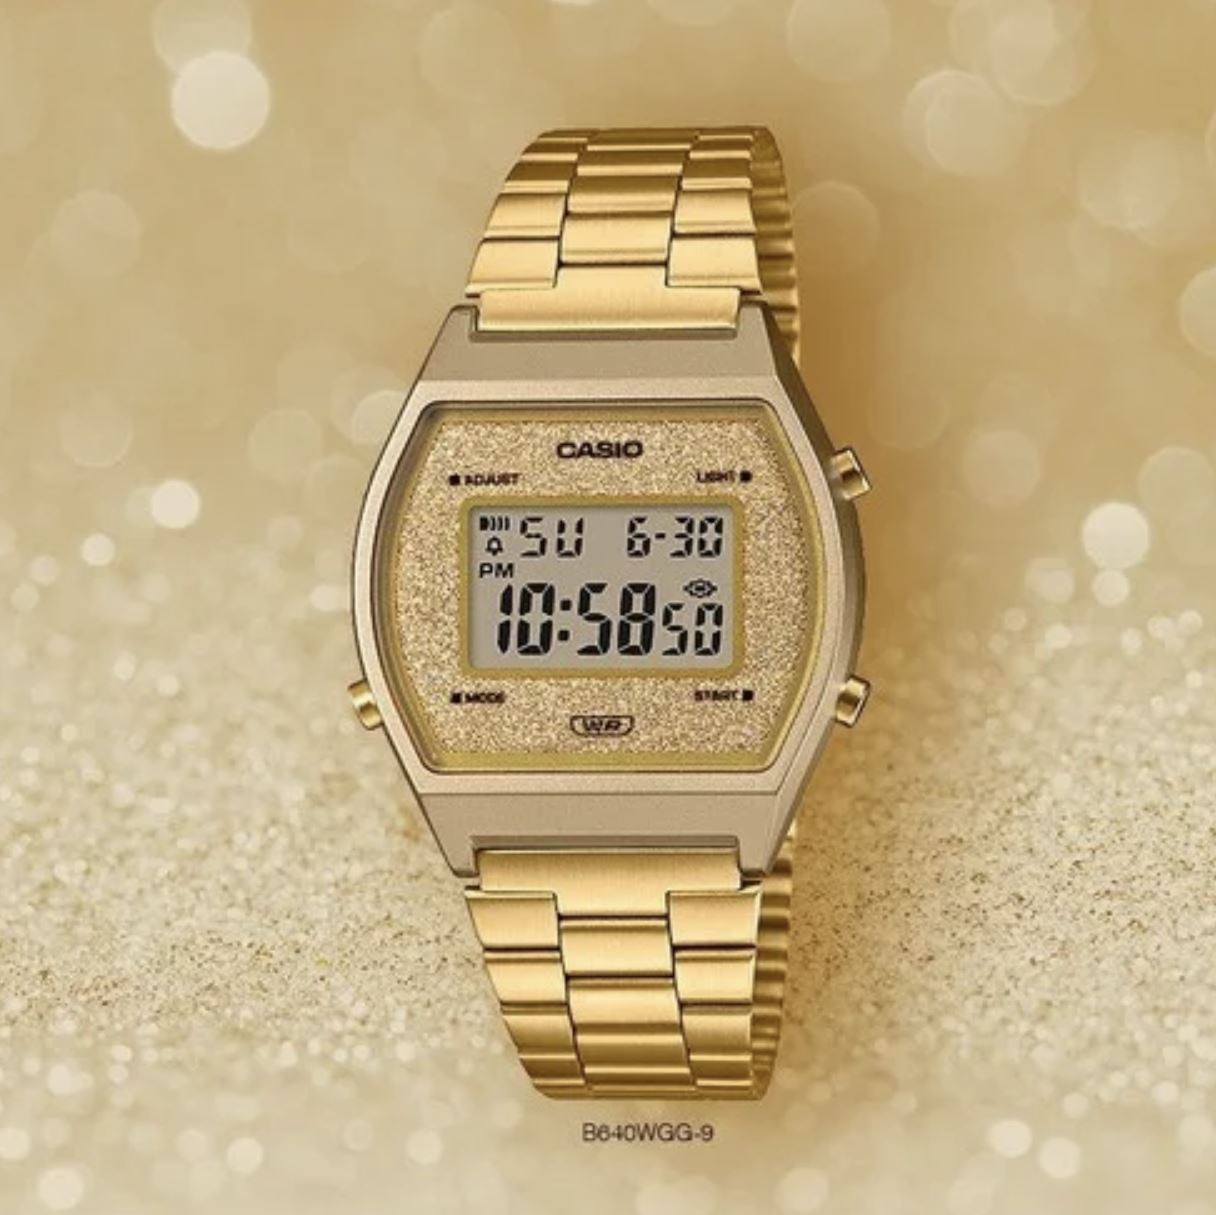 Reloj pulsera Casio Collection F-91 de cuerpo color dorado